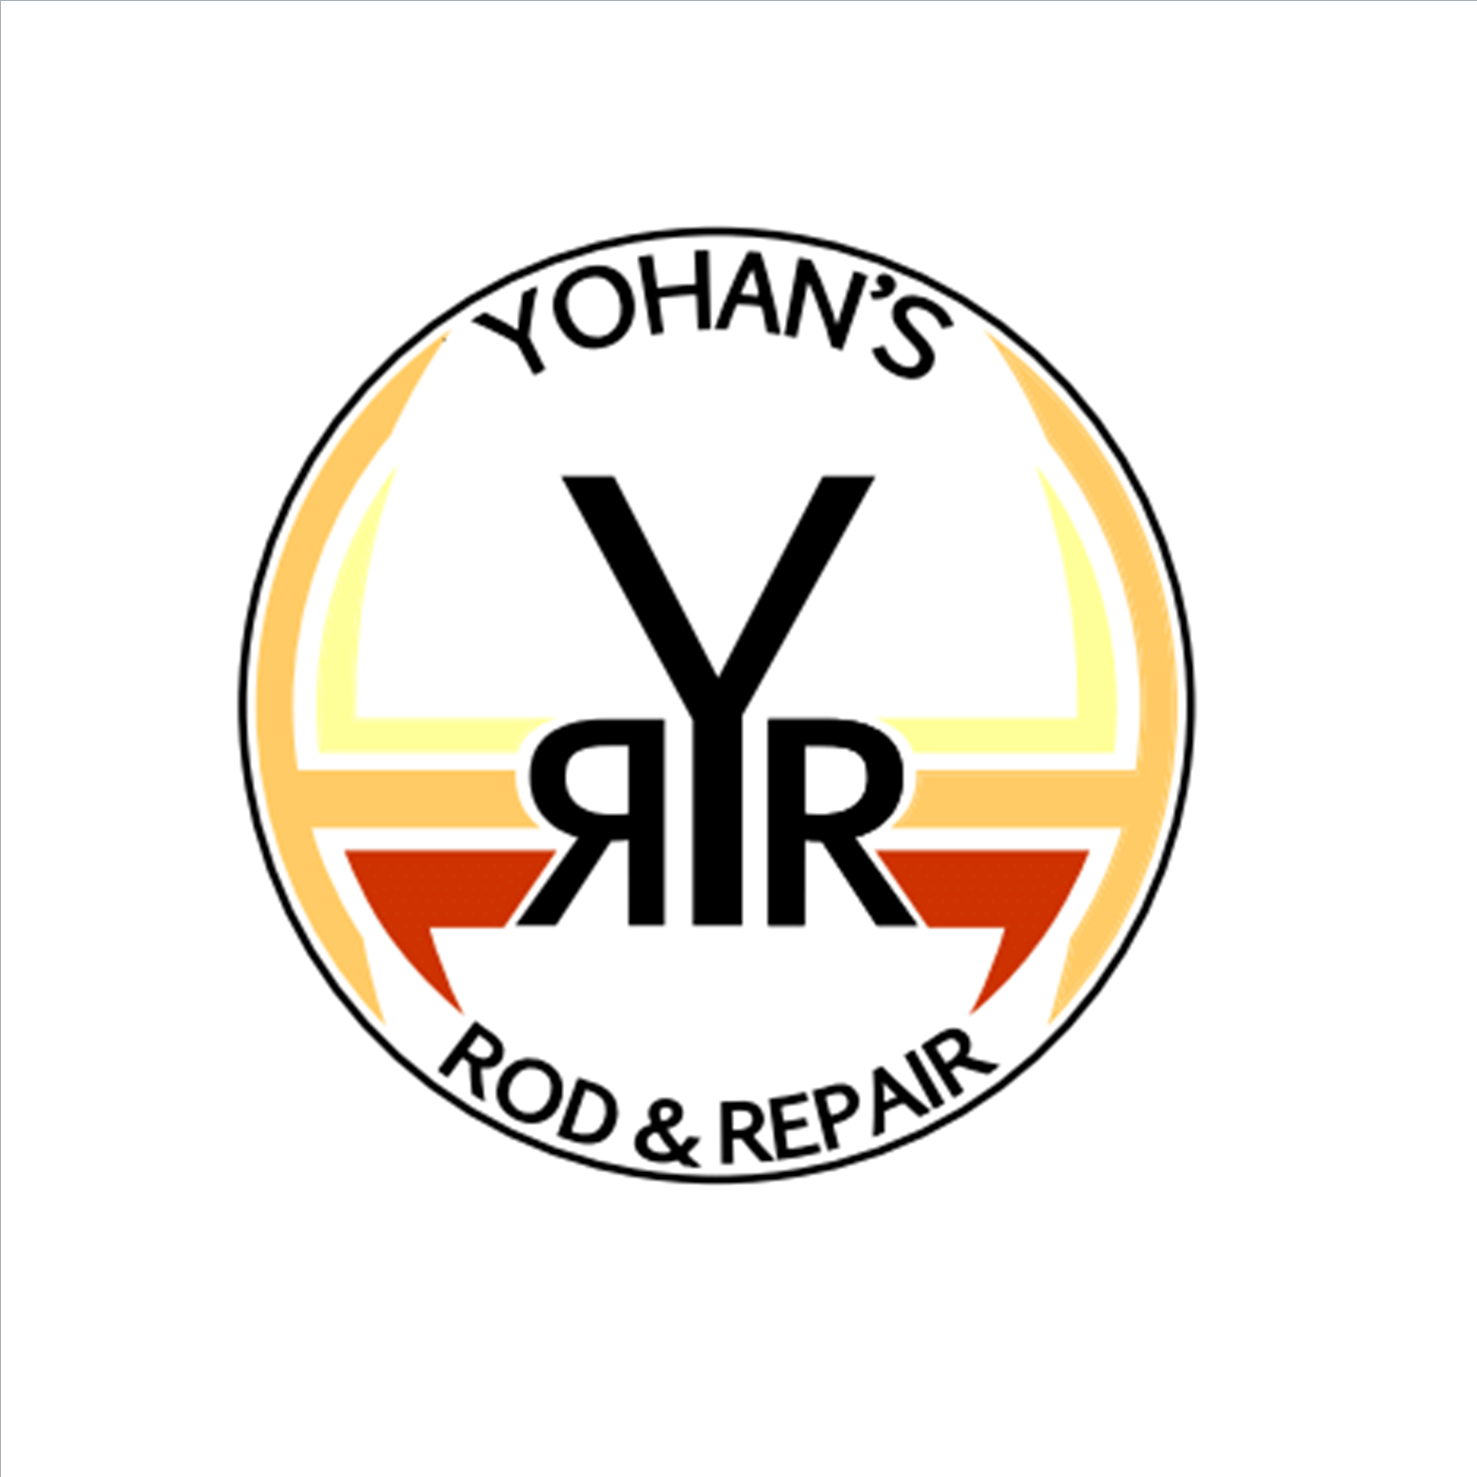 Yohan's Rod & Repair